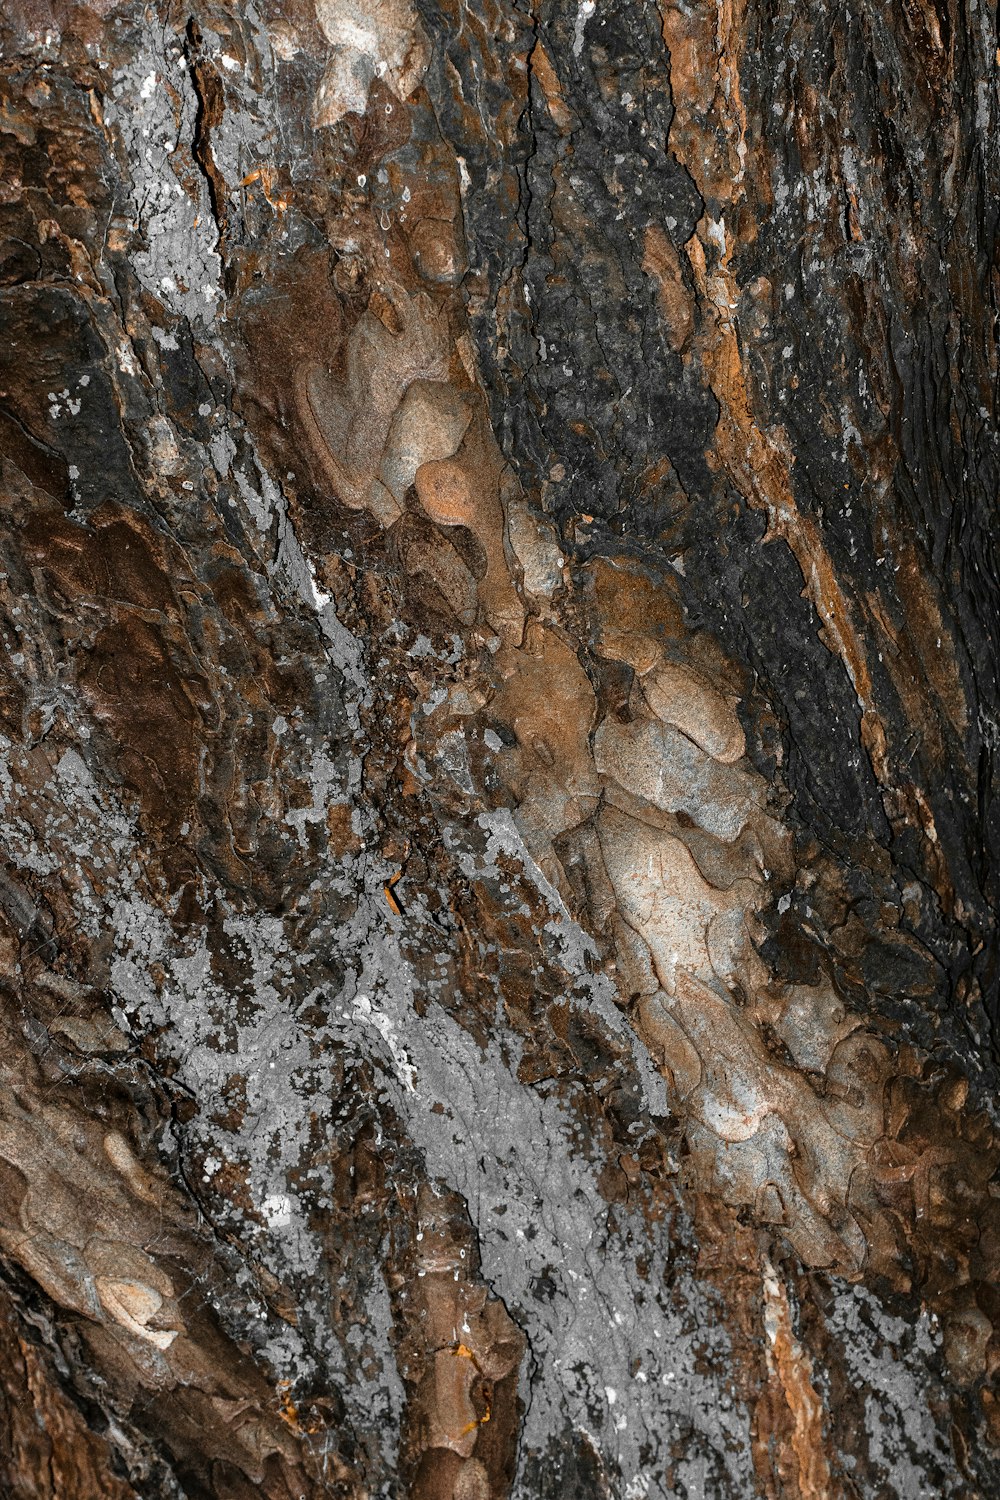 a close up of a rock